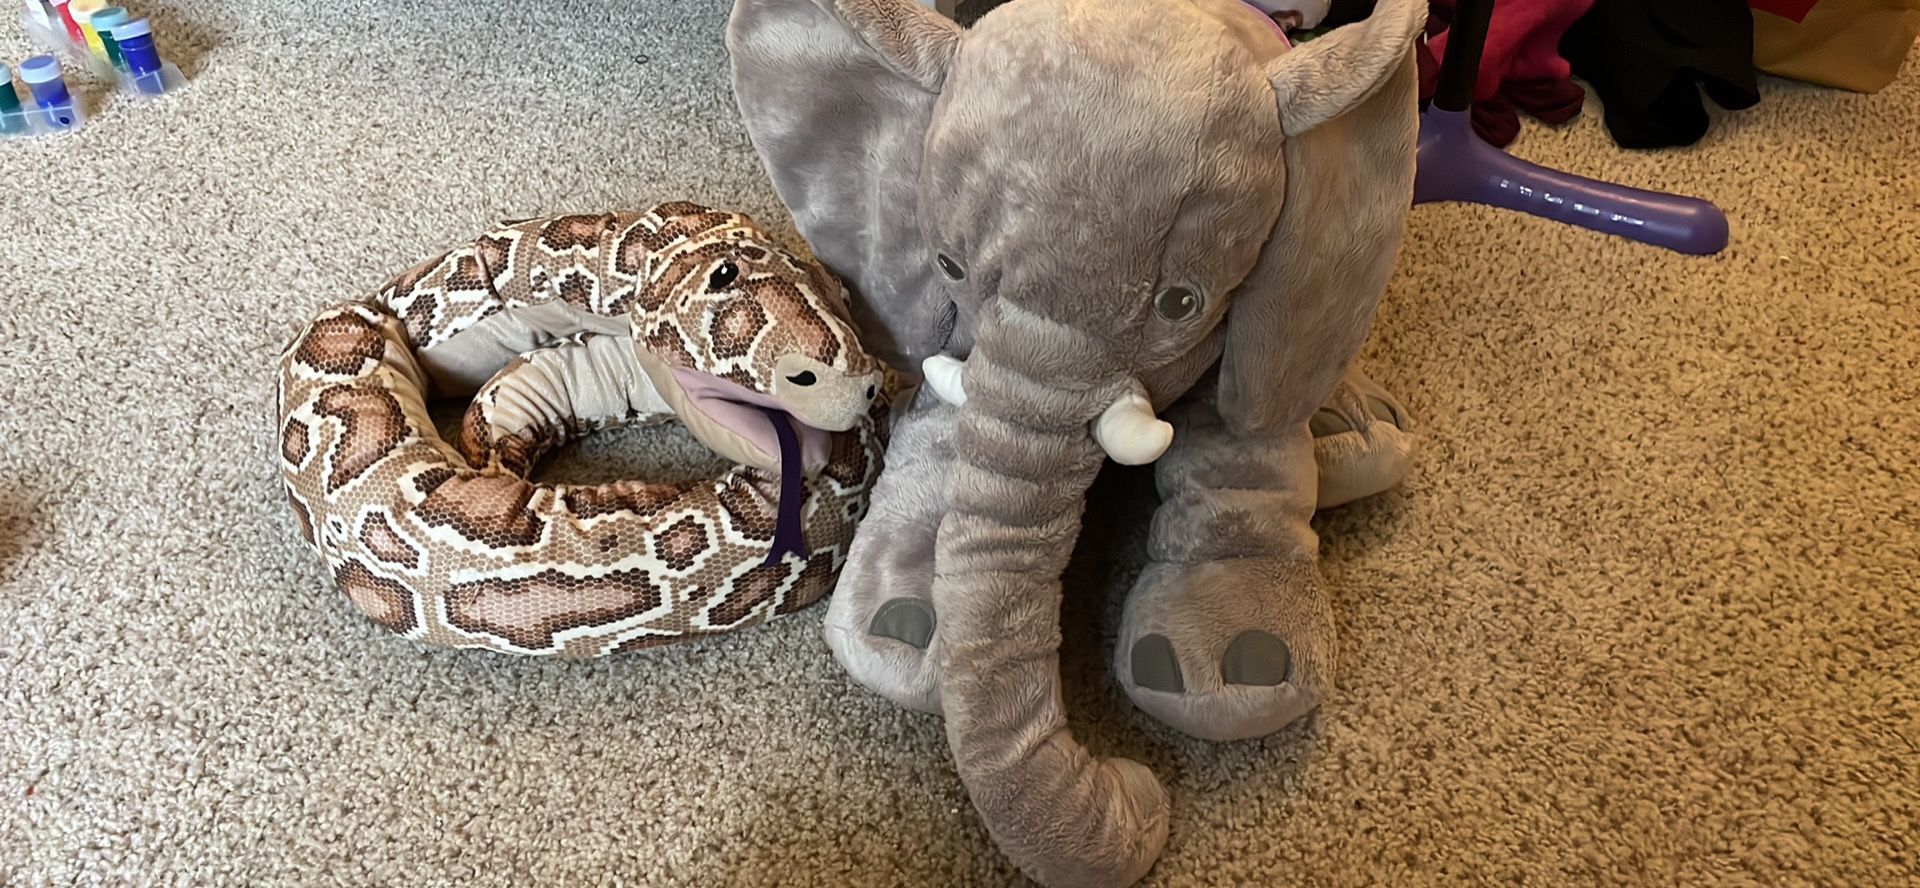 Stuffed Snake & Elephant